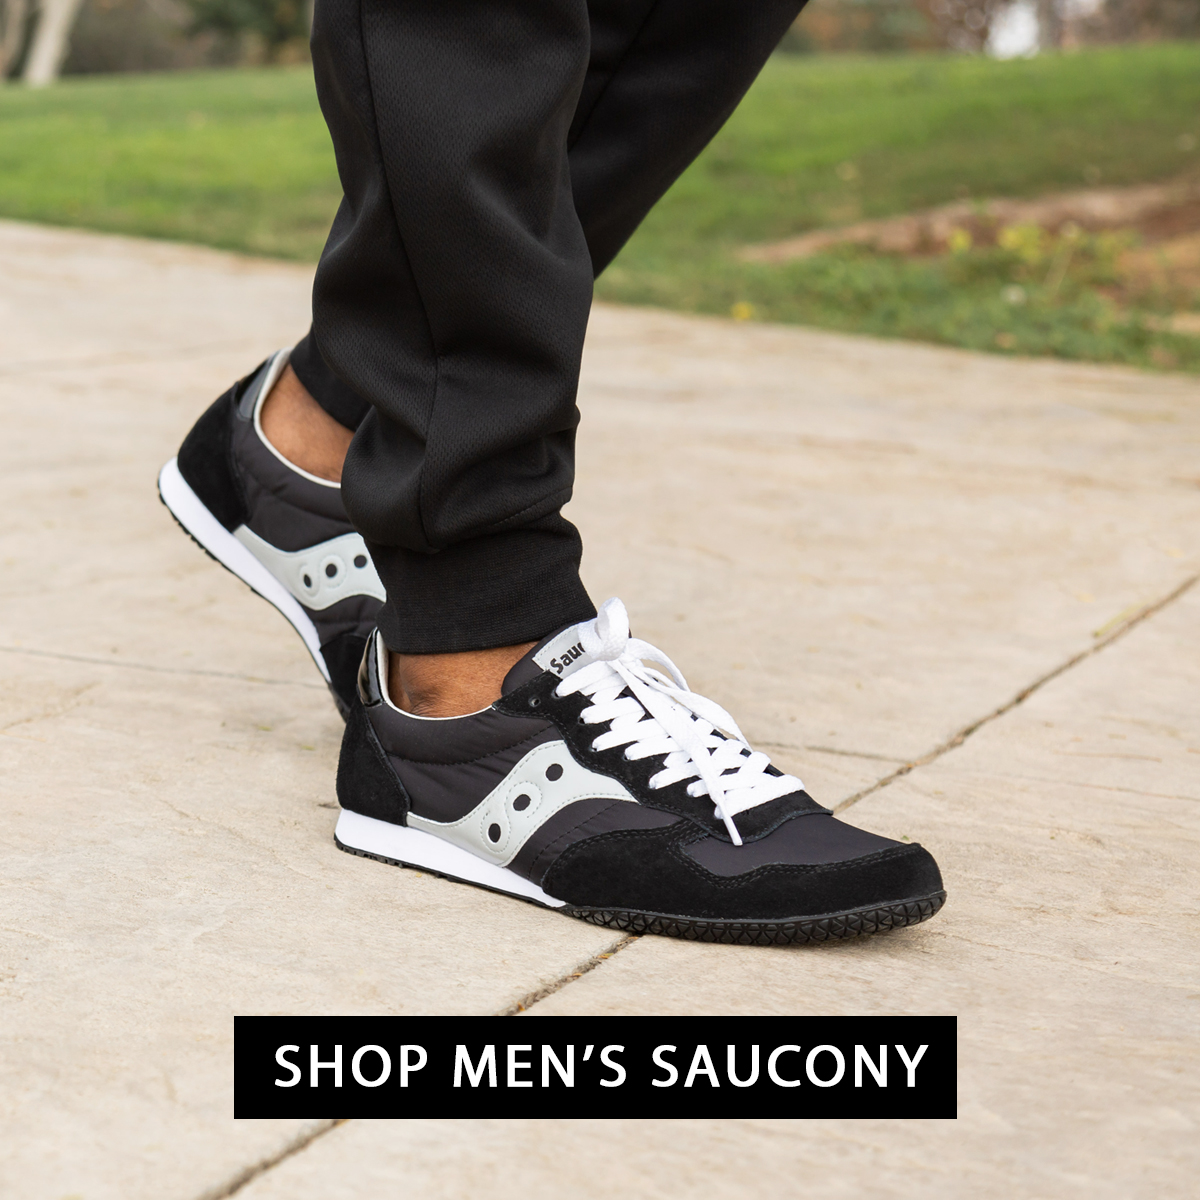 saucony men's casual shoes